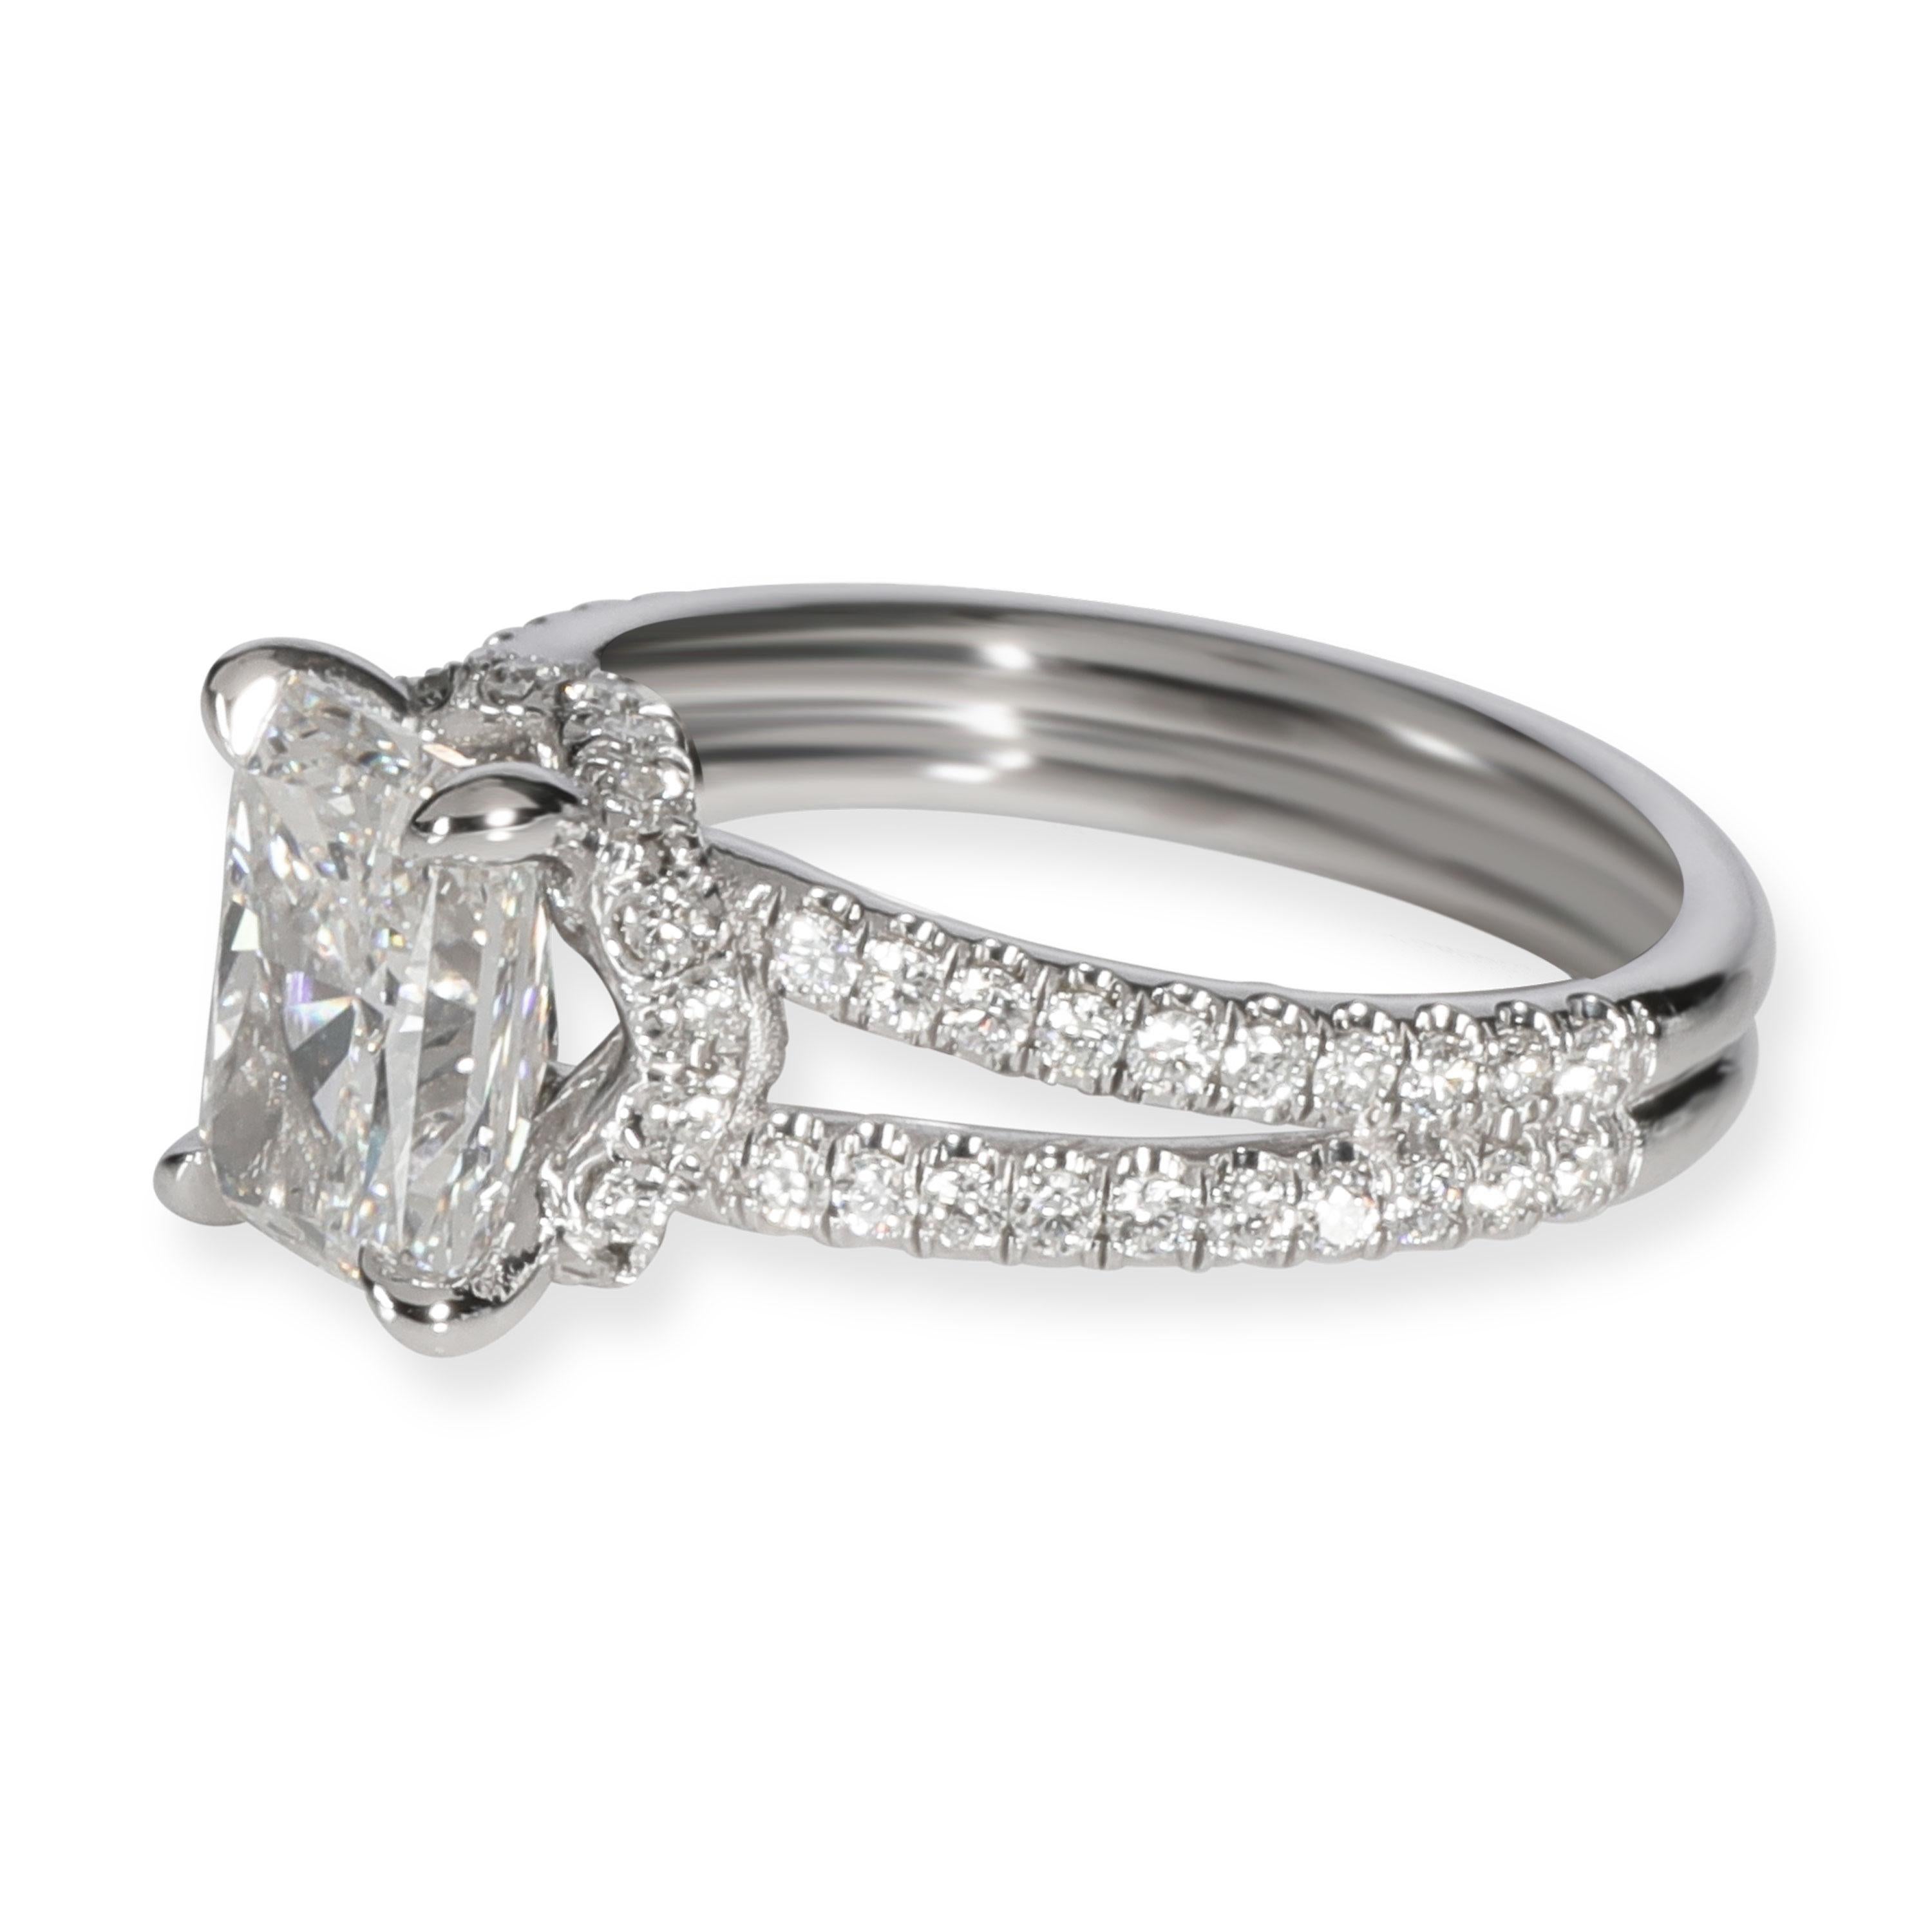 Radiant Cut James Allen GIA Radiant Diamond Engagement Ring in Platinum I VS1 2.14 Carat